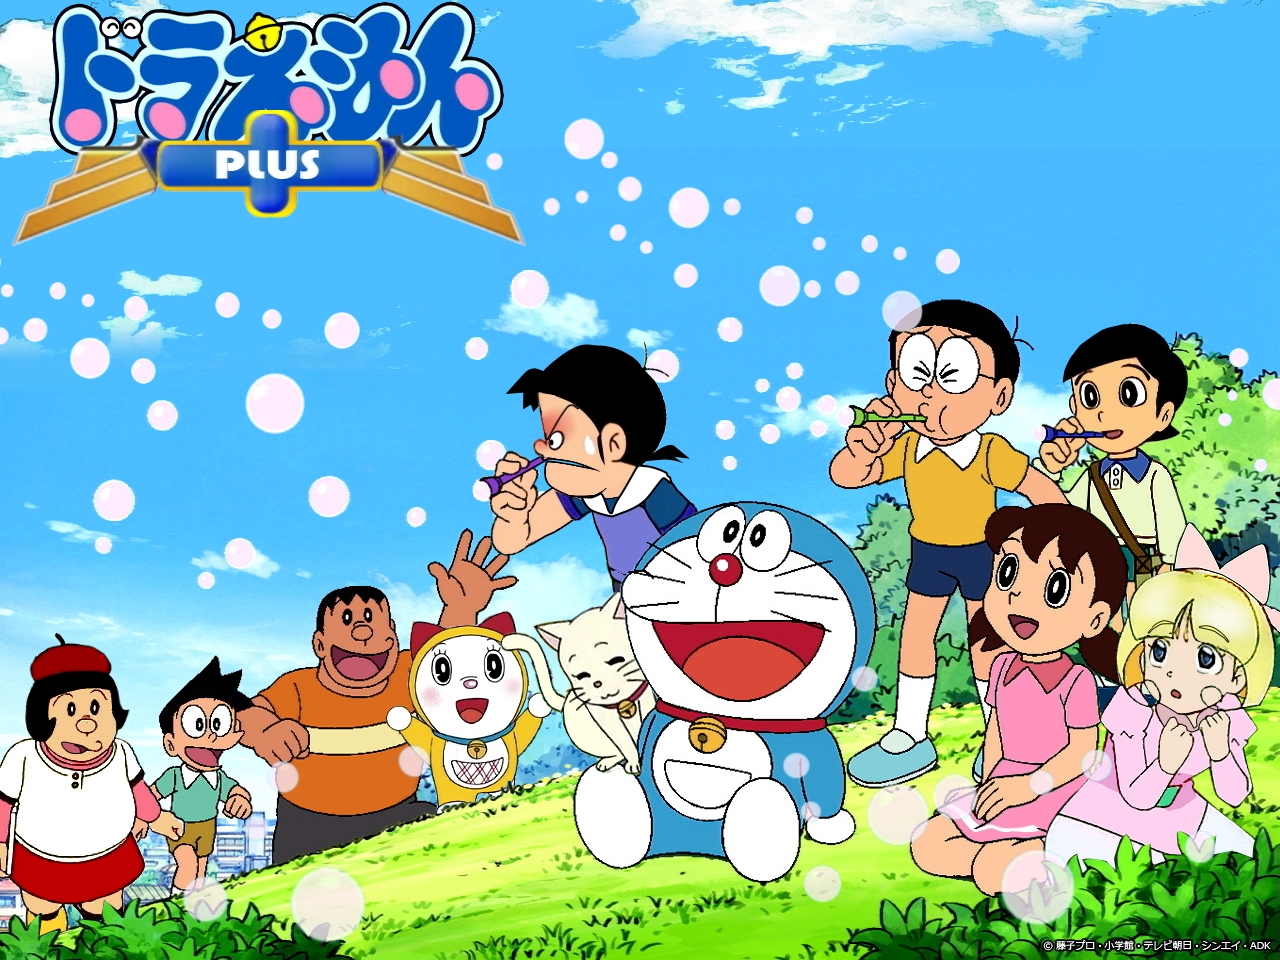 Những hình ảnh về anh chàng robot Doraemon đáng yêu luôn khiến con tim bạn phập phồng. Doraemon là người bạn đồng hành tin cậy của nhiều thế hệ và những hình ảnh về anh ta sẽ đem lại cho bạn nhiều kỷ niệm đẹp.